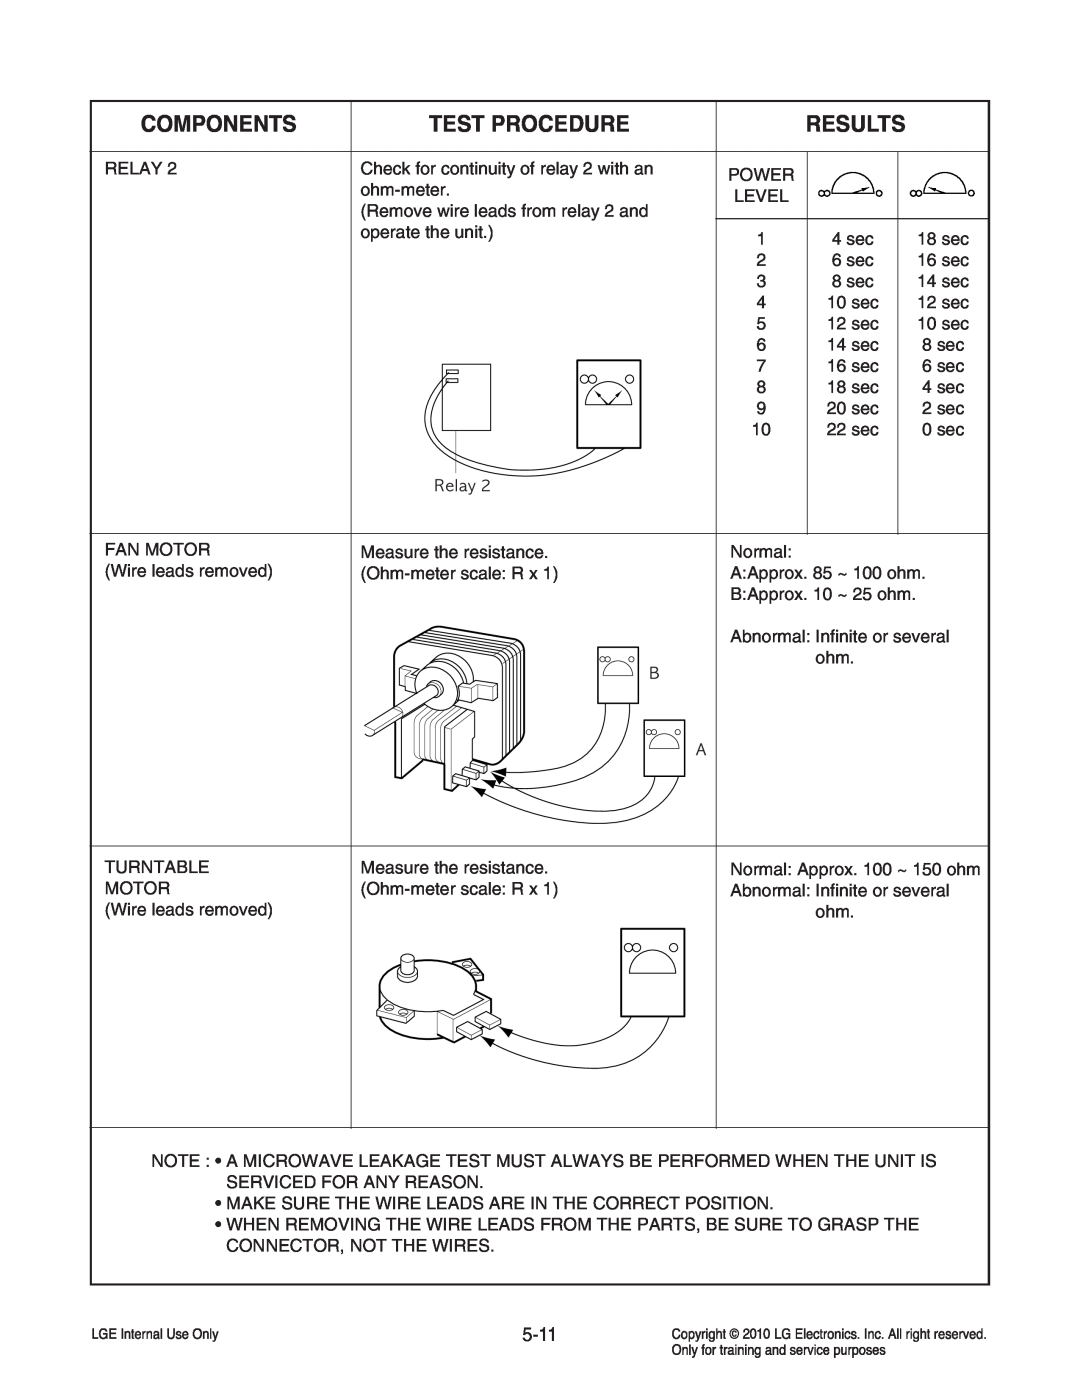 Frigidaire LCRT2010ST service manual Components, Test Procedure, Results, 5-11, 8 sec, 6 sec, 4 sec, 2 sec, 0 sec 